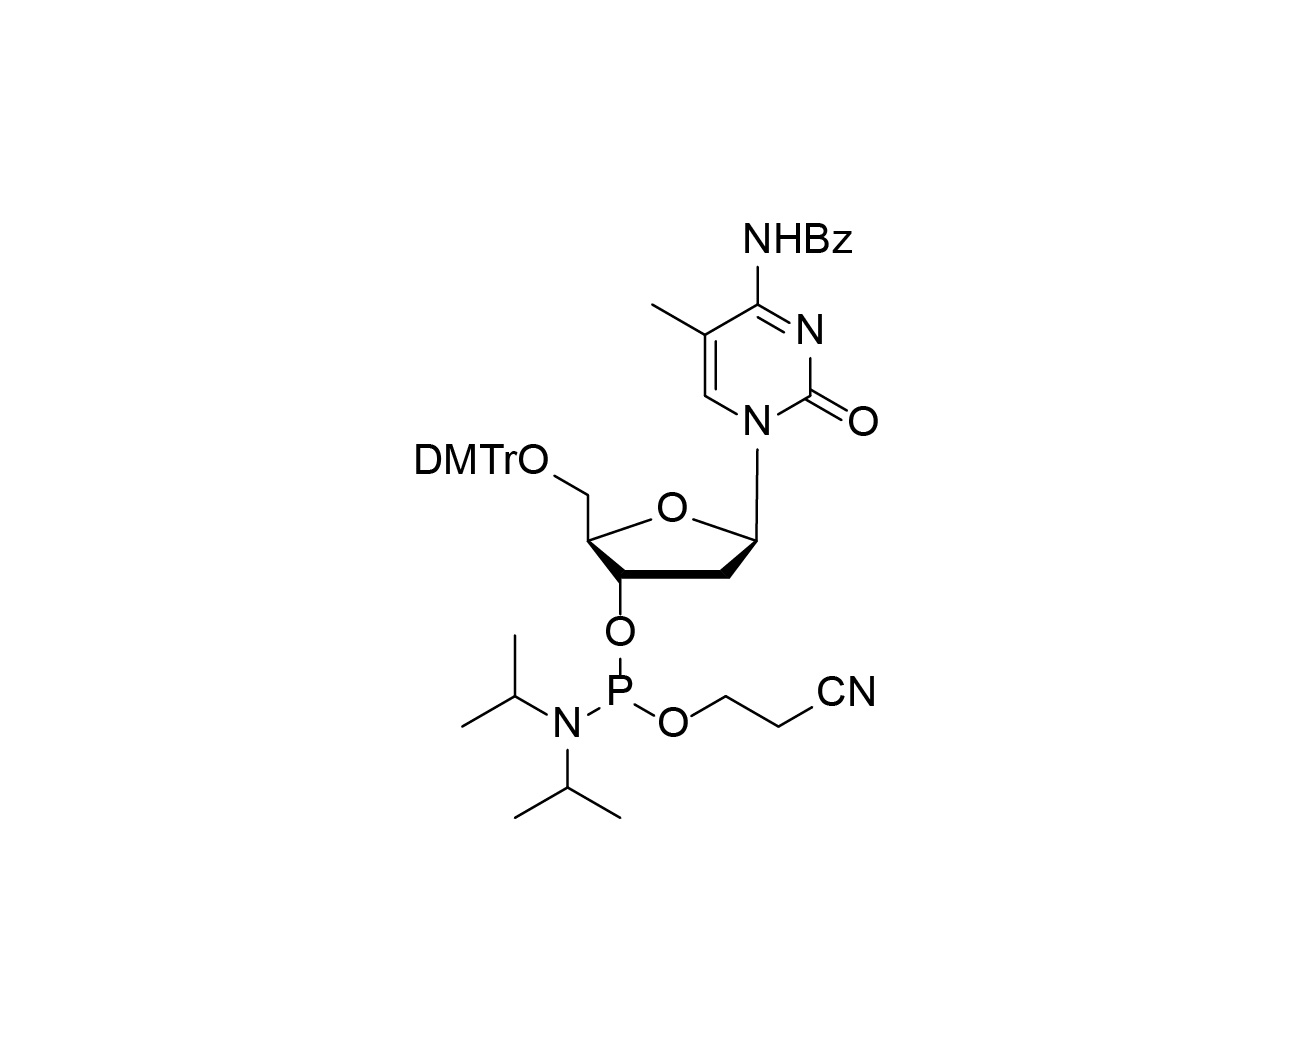 DMTr-5-Me-dC(Bz)-3'-CE-Phosphoramidite